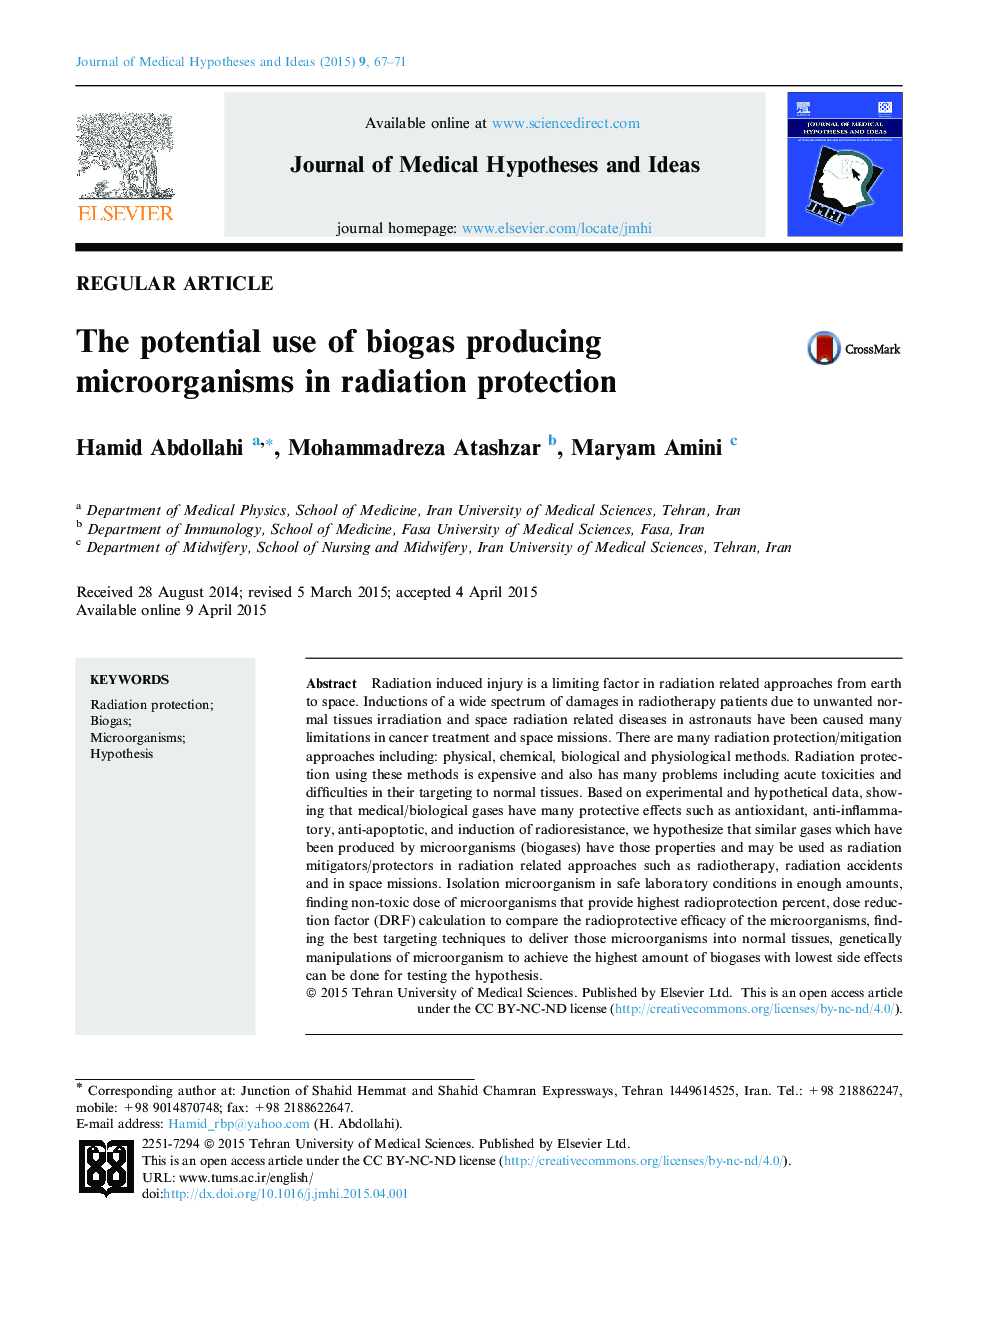 استفاده بالقوه از میکروارگانیسم های تولید بیوگاز در حفاظت از اشعه 